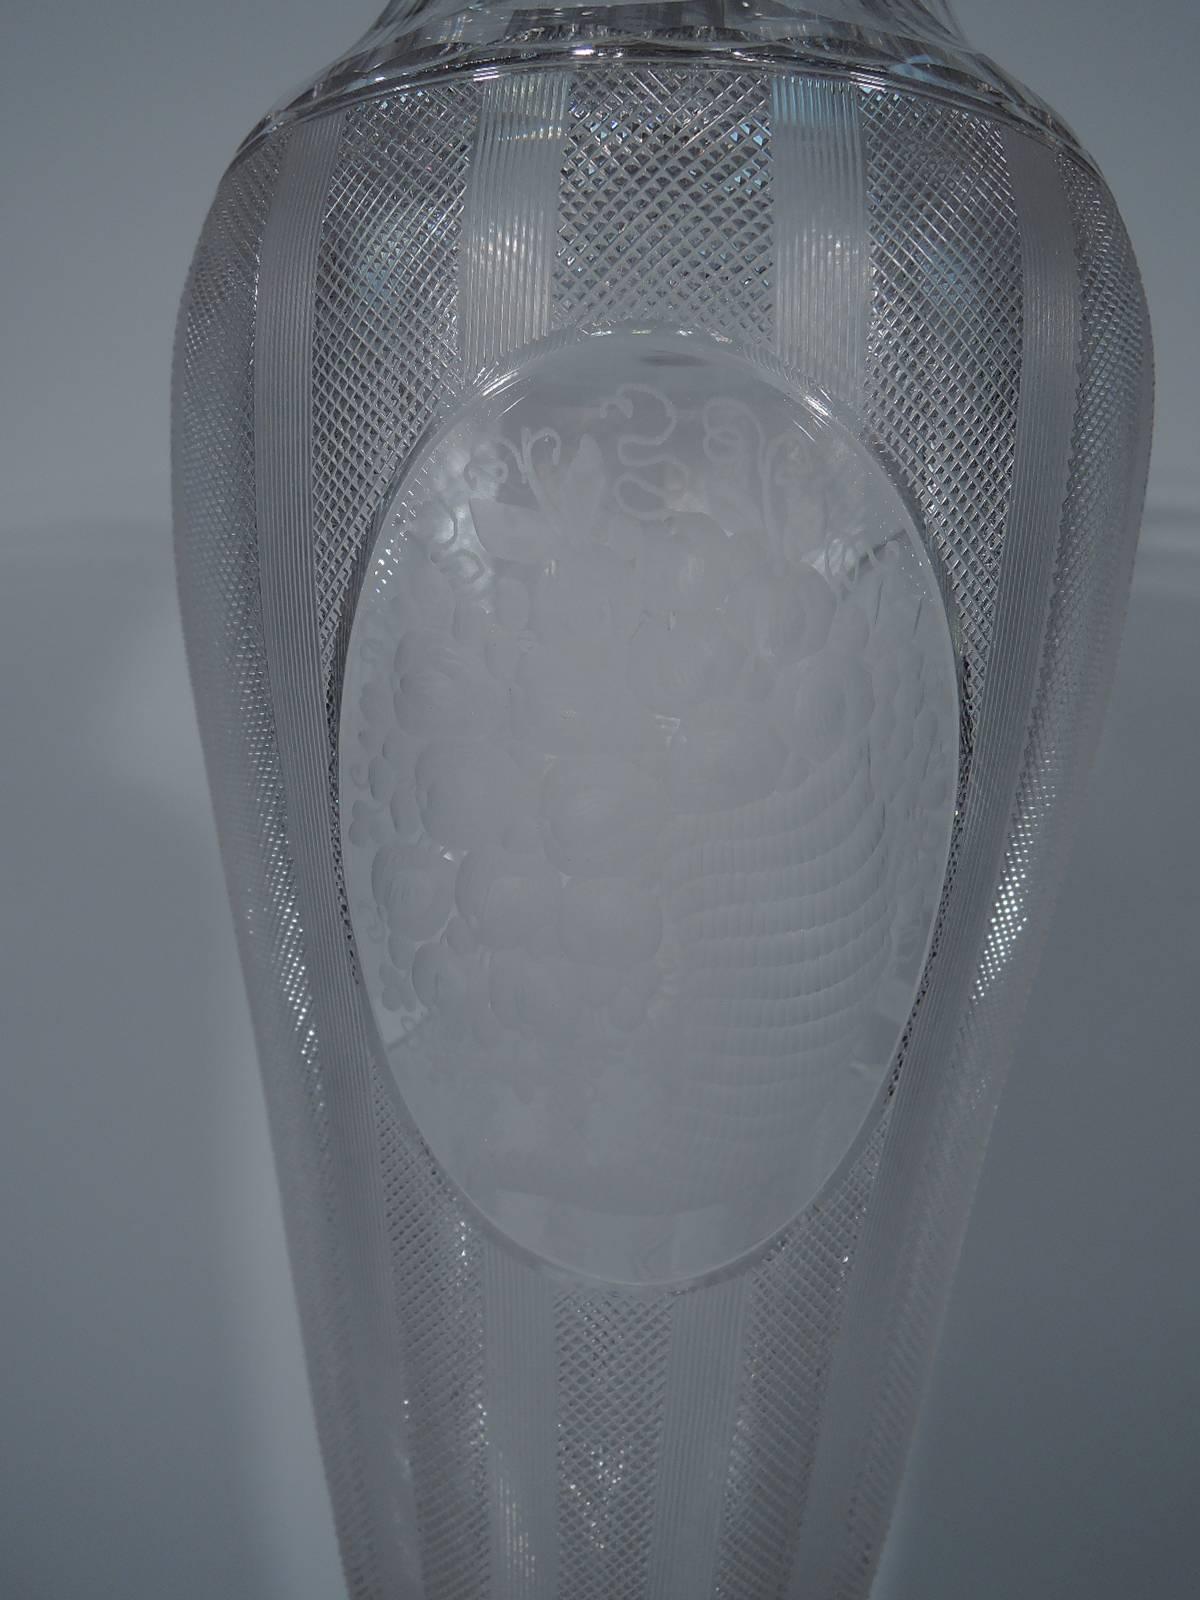 large silver vase